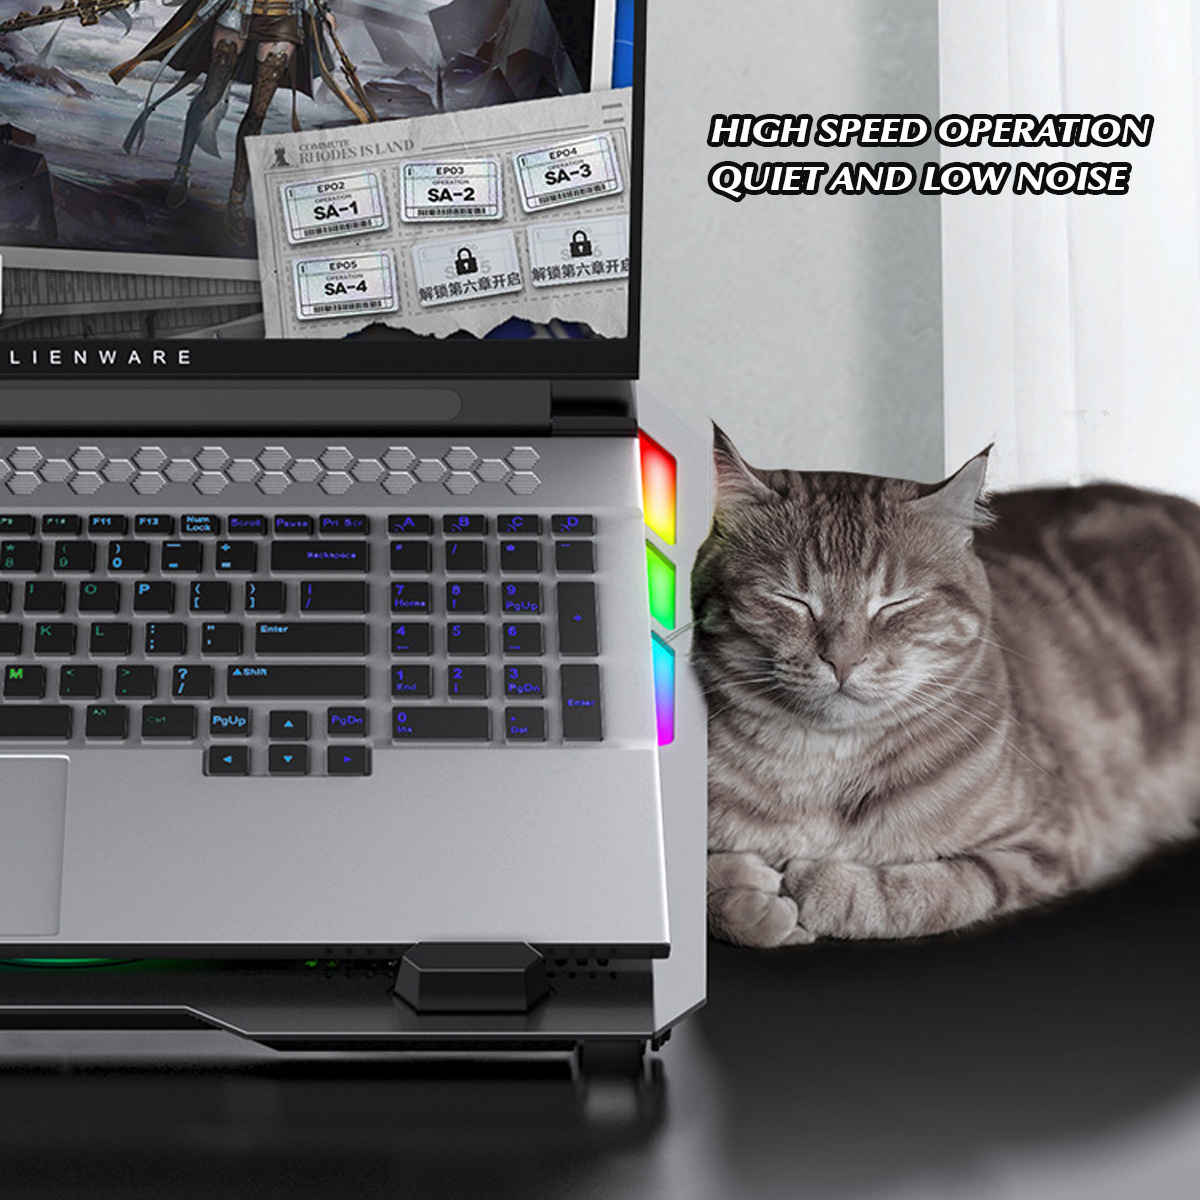 RGB-5-Gear-Angle-Adjustable-Macbook-Cooling-Stand-Dual-USB-Port-Desktop-Holder-Bracket-Compatible-wi-1861381-5